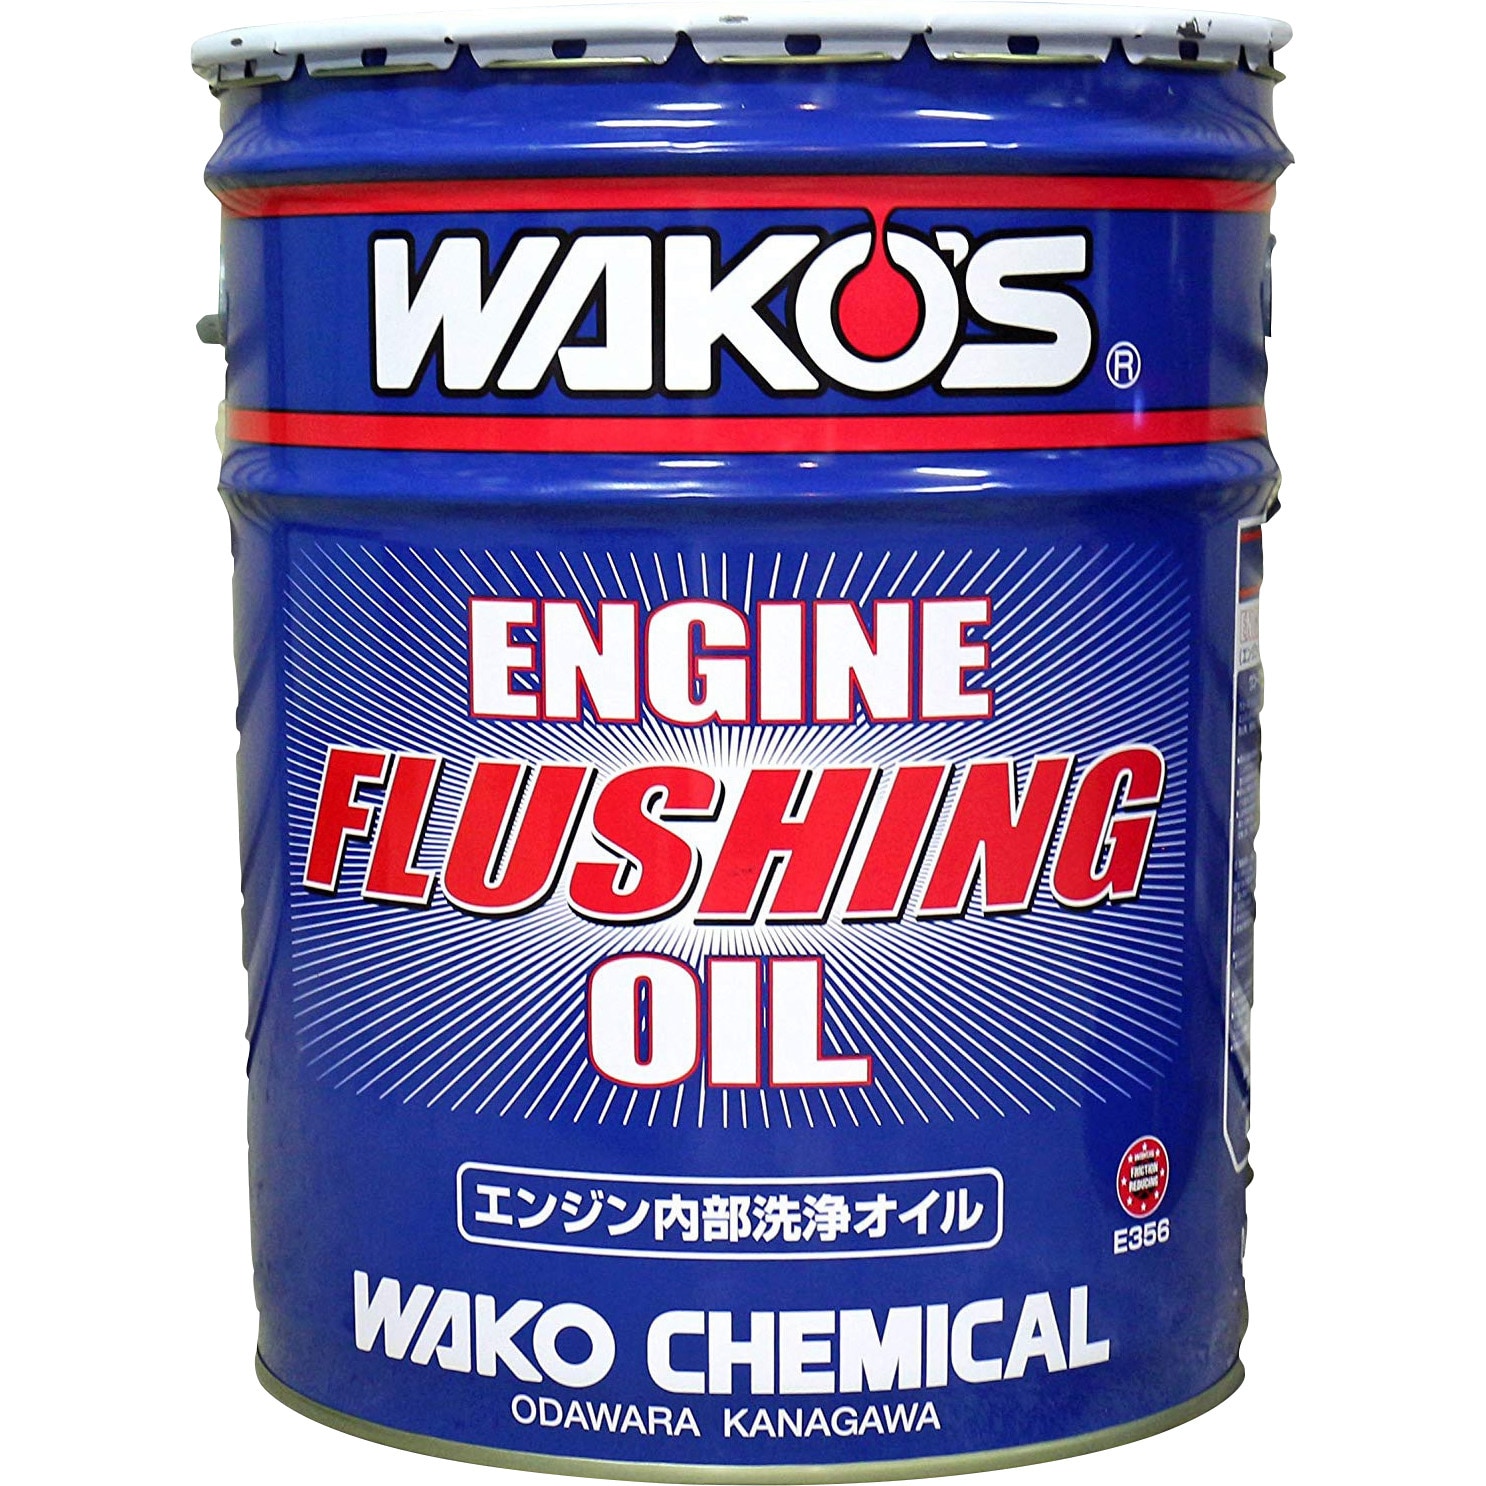 E356 エンジンフラッシングオイル EF-OIL 1缶(20L) WAKO'S(ワコーズ